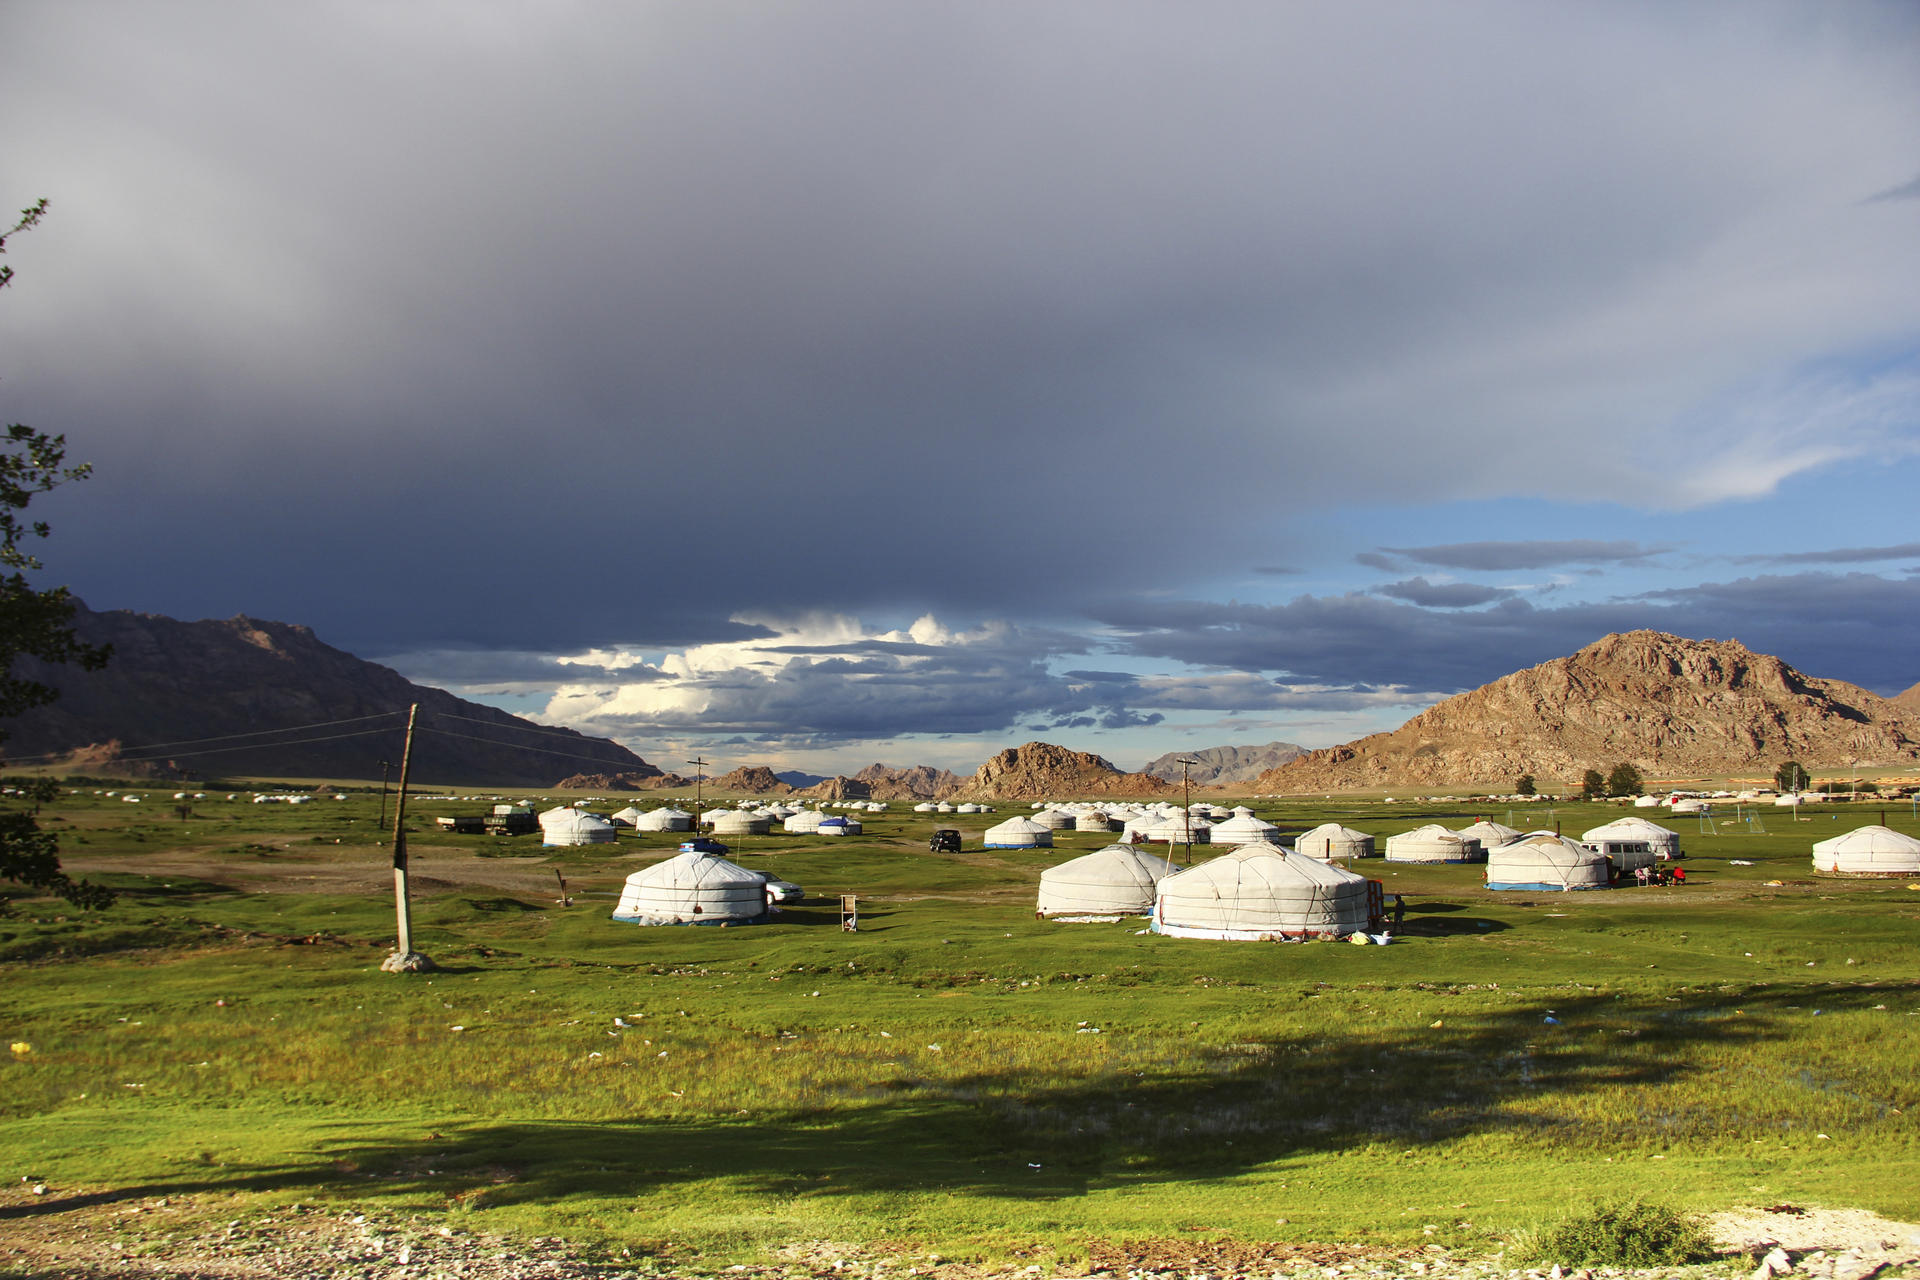 A nomadic community set up on the fringes of Khovd, western Mongolia.